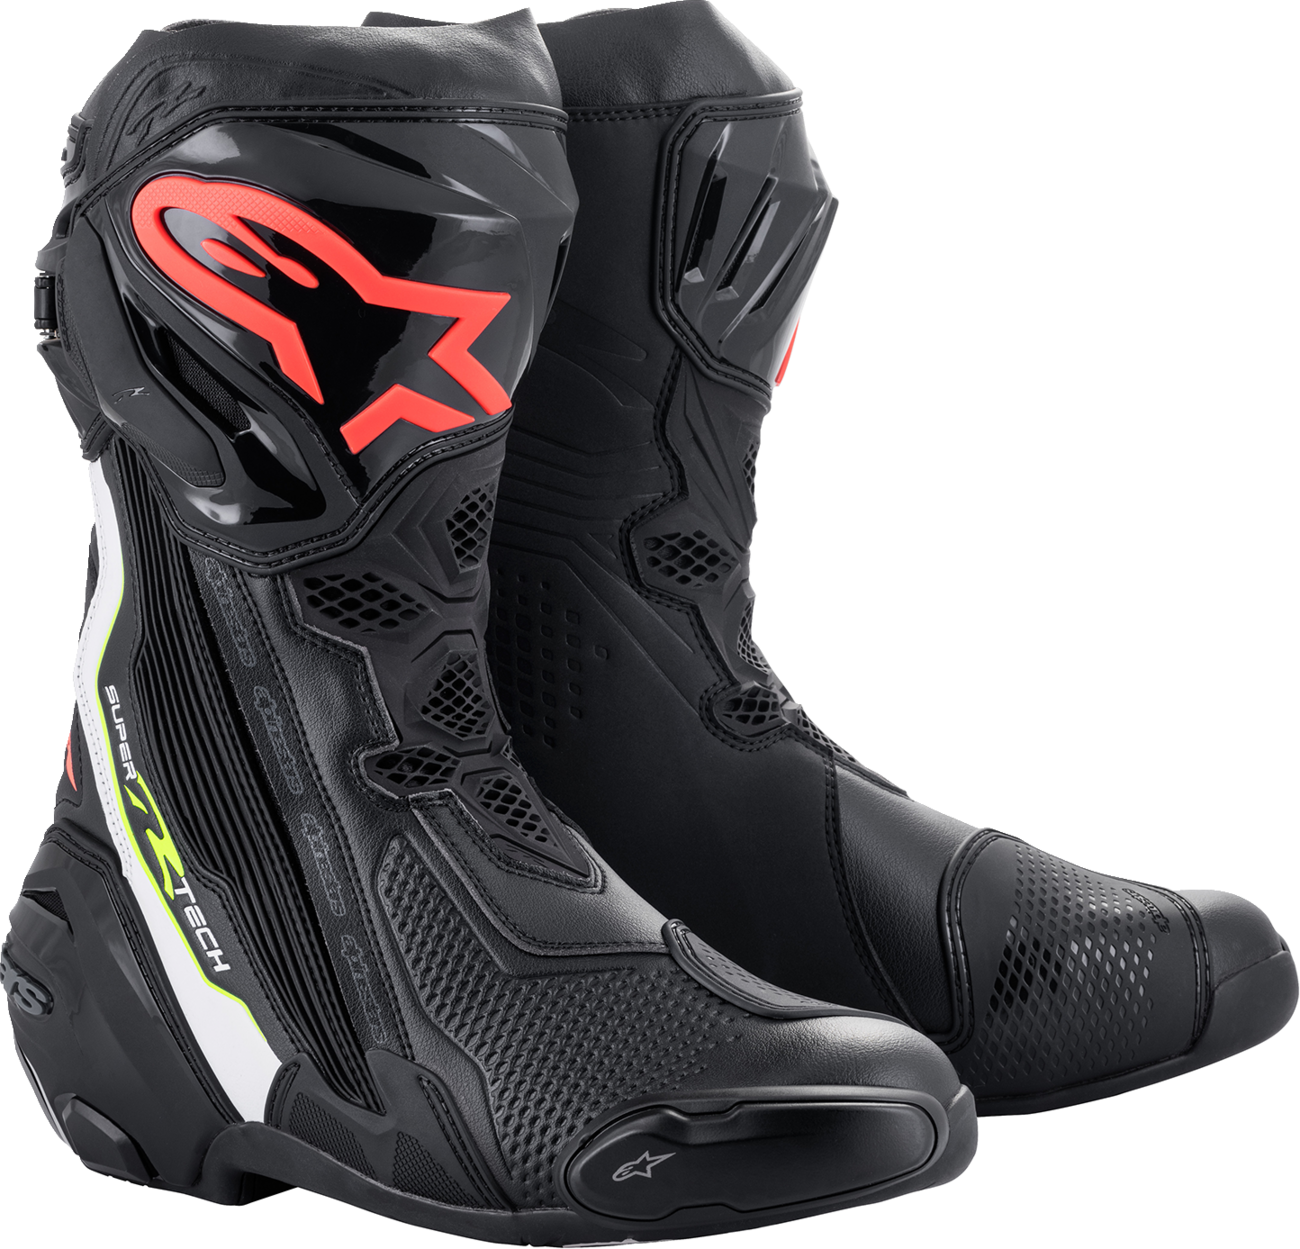 ALPINESTARS Supertech R Boots - Black/Red - US 10.5 / EU 45 2220021-1236-45